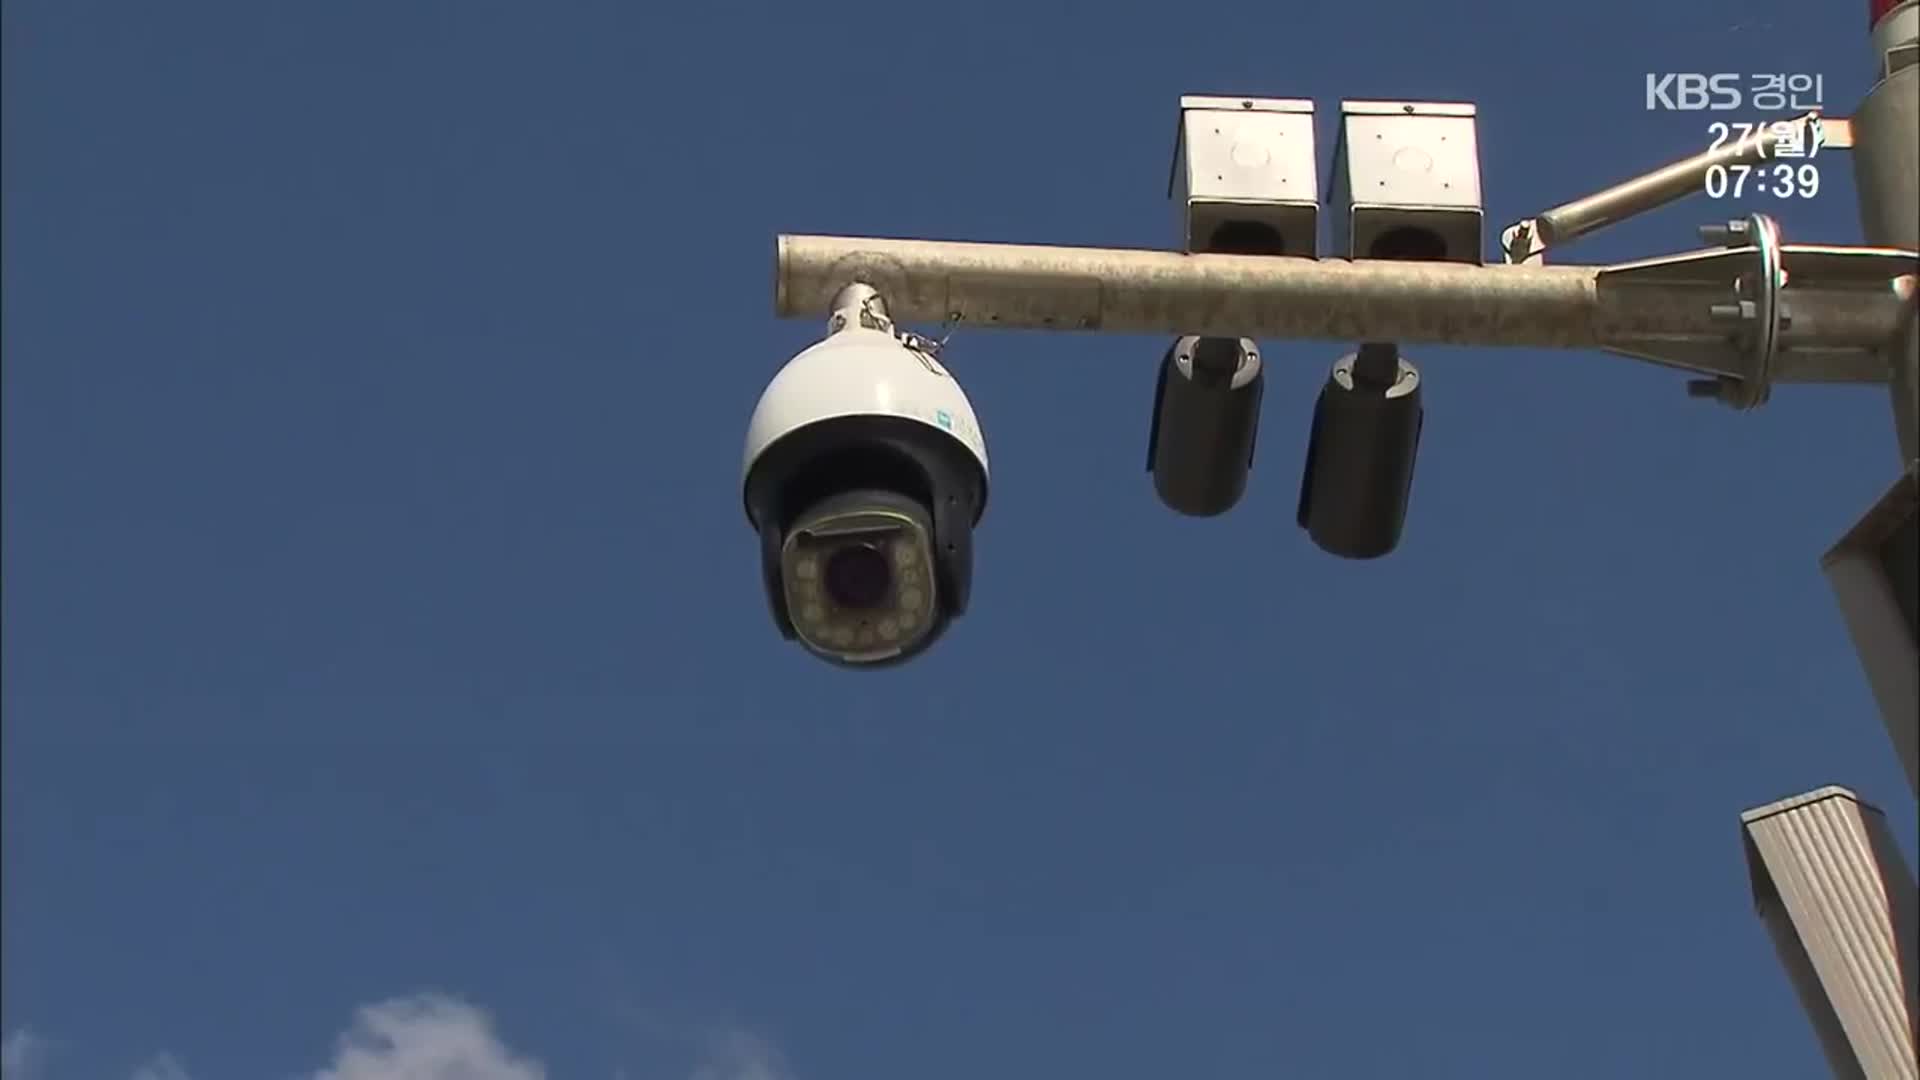 “투신도, 사고도 막는다”…AI 만난 CCTV